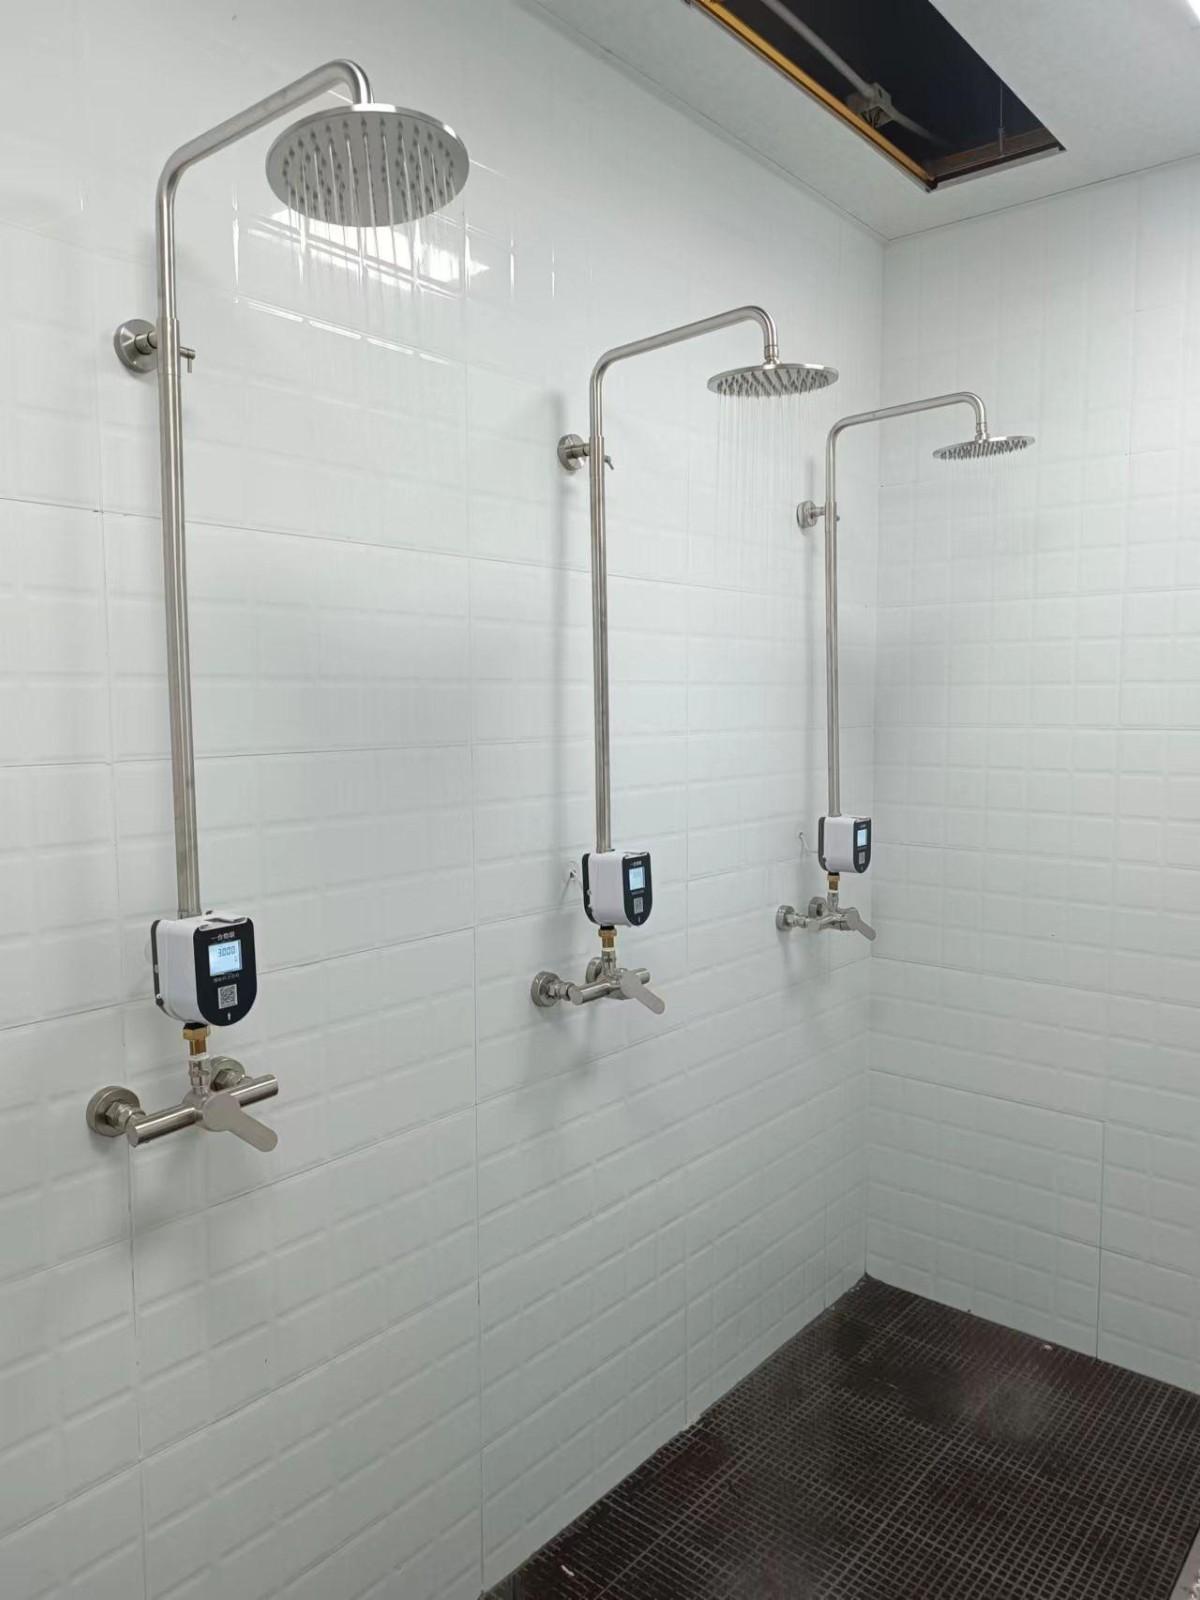 节水器、浴室刷卡节水器、洗澡扫码节水器